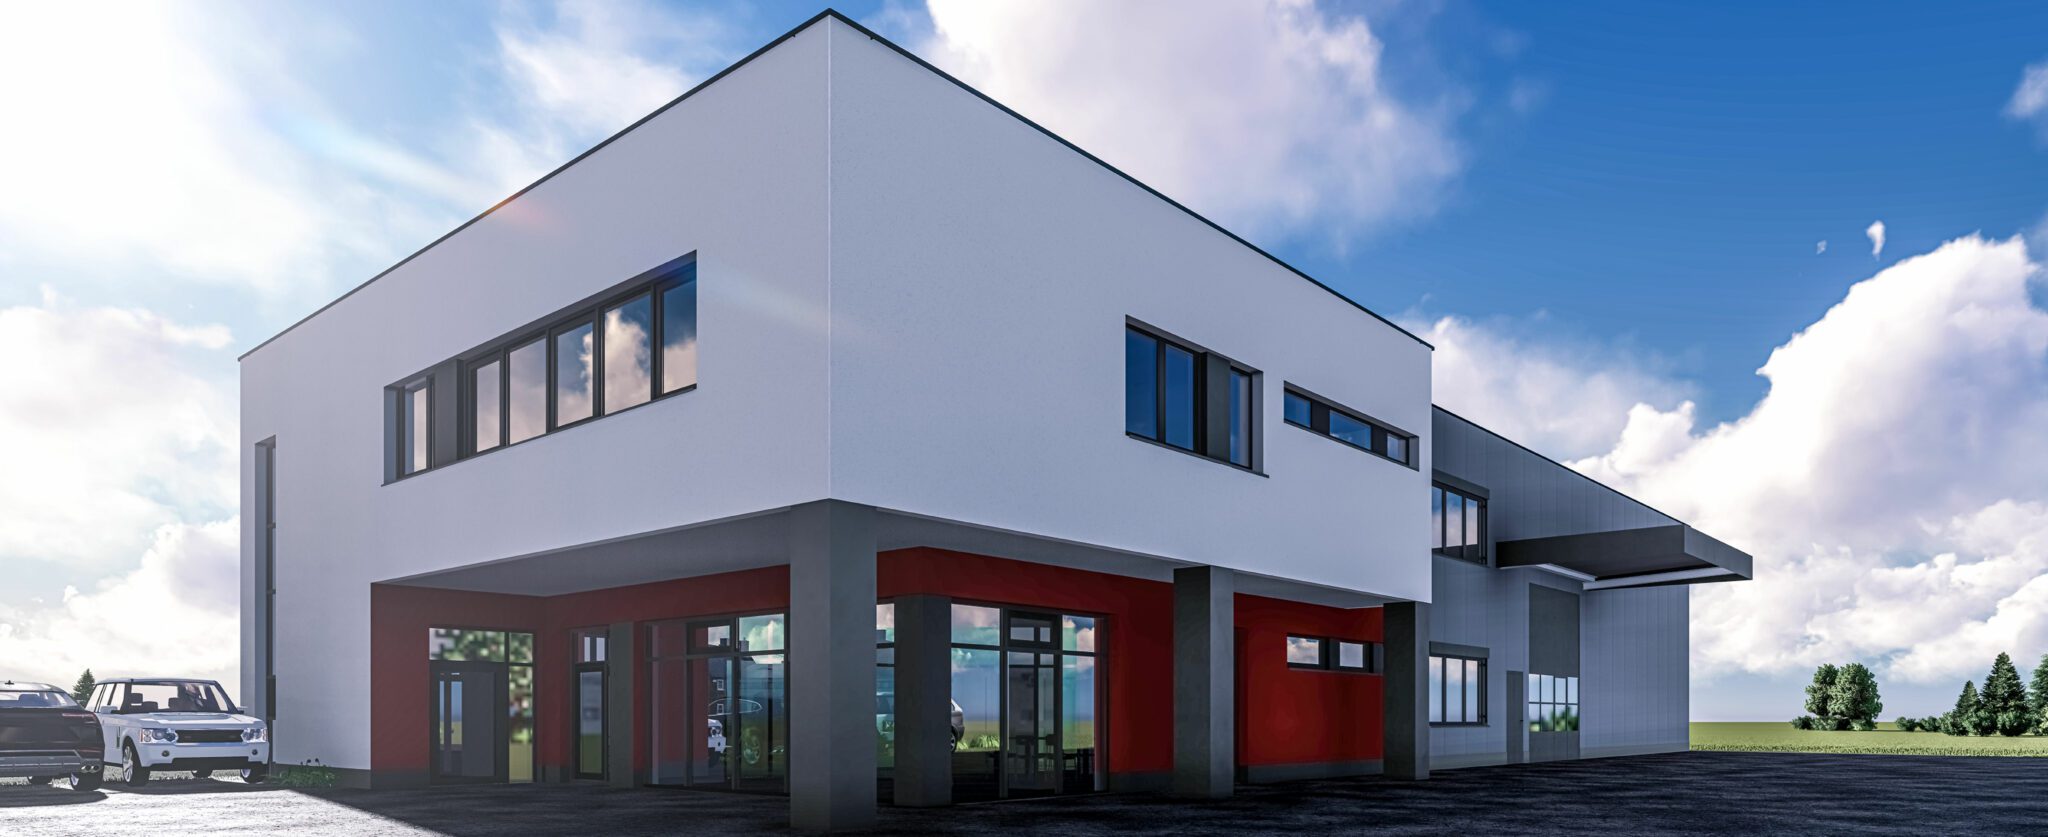 Planungsauftrag für den Neubau des Gewerbegebäudes der Firma Lederer Printmanagement in Röttenbach